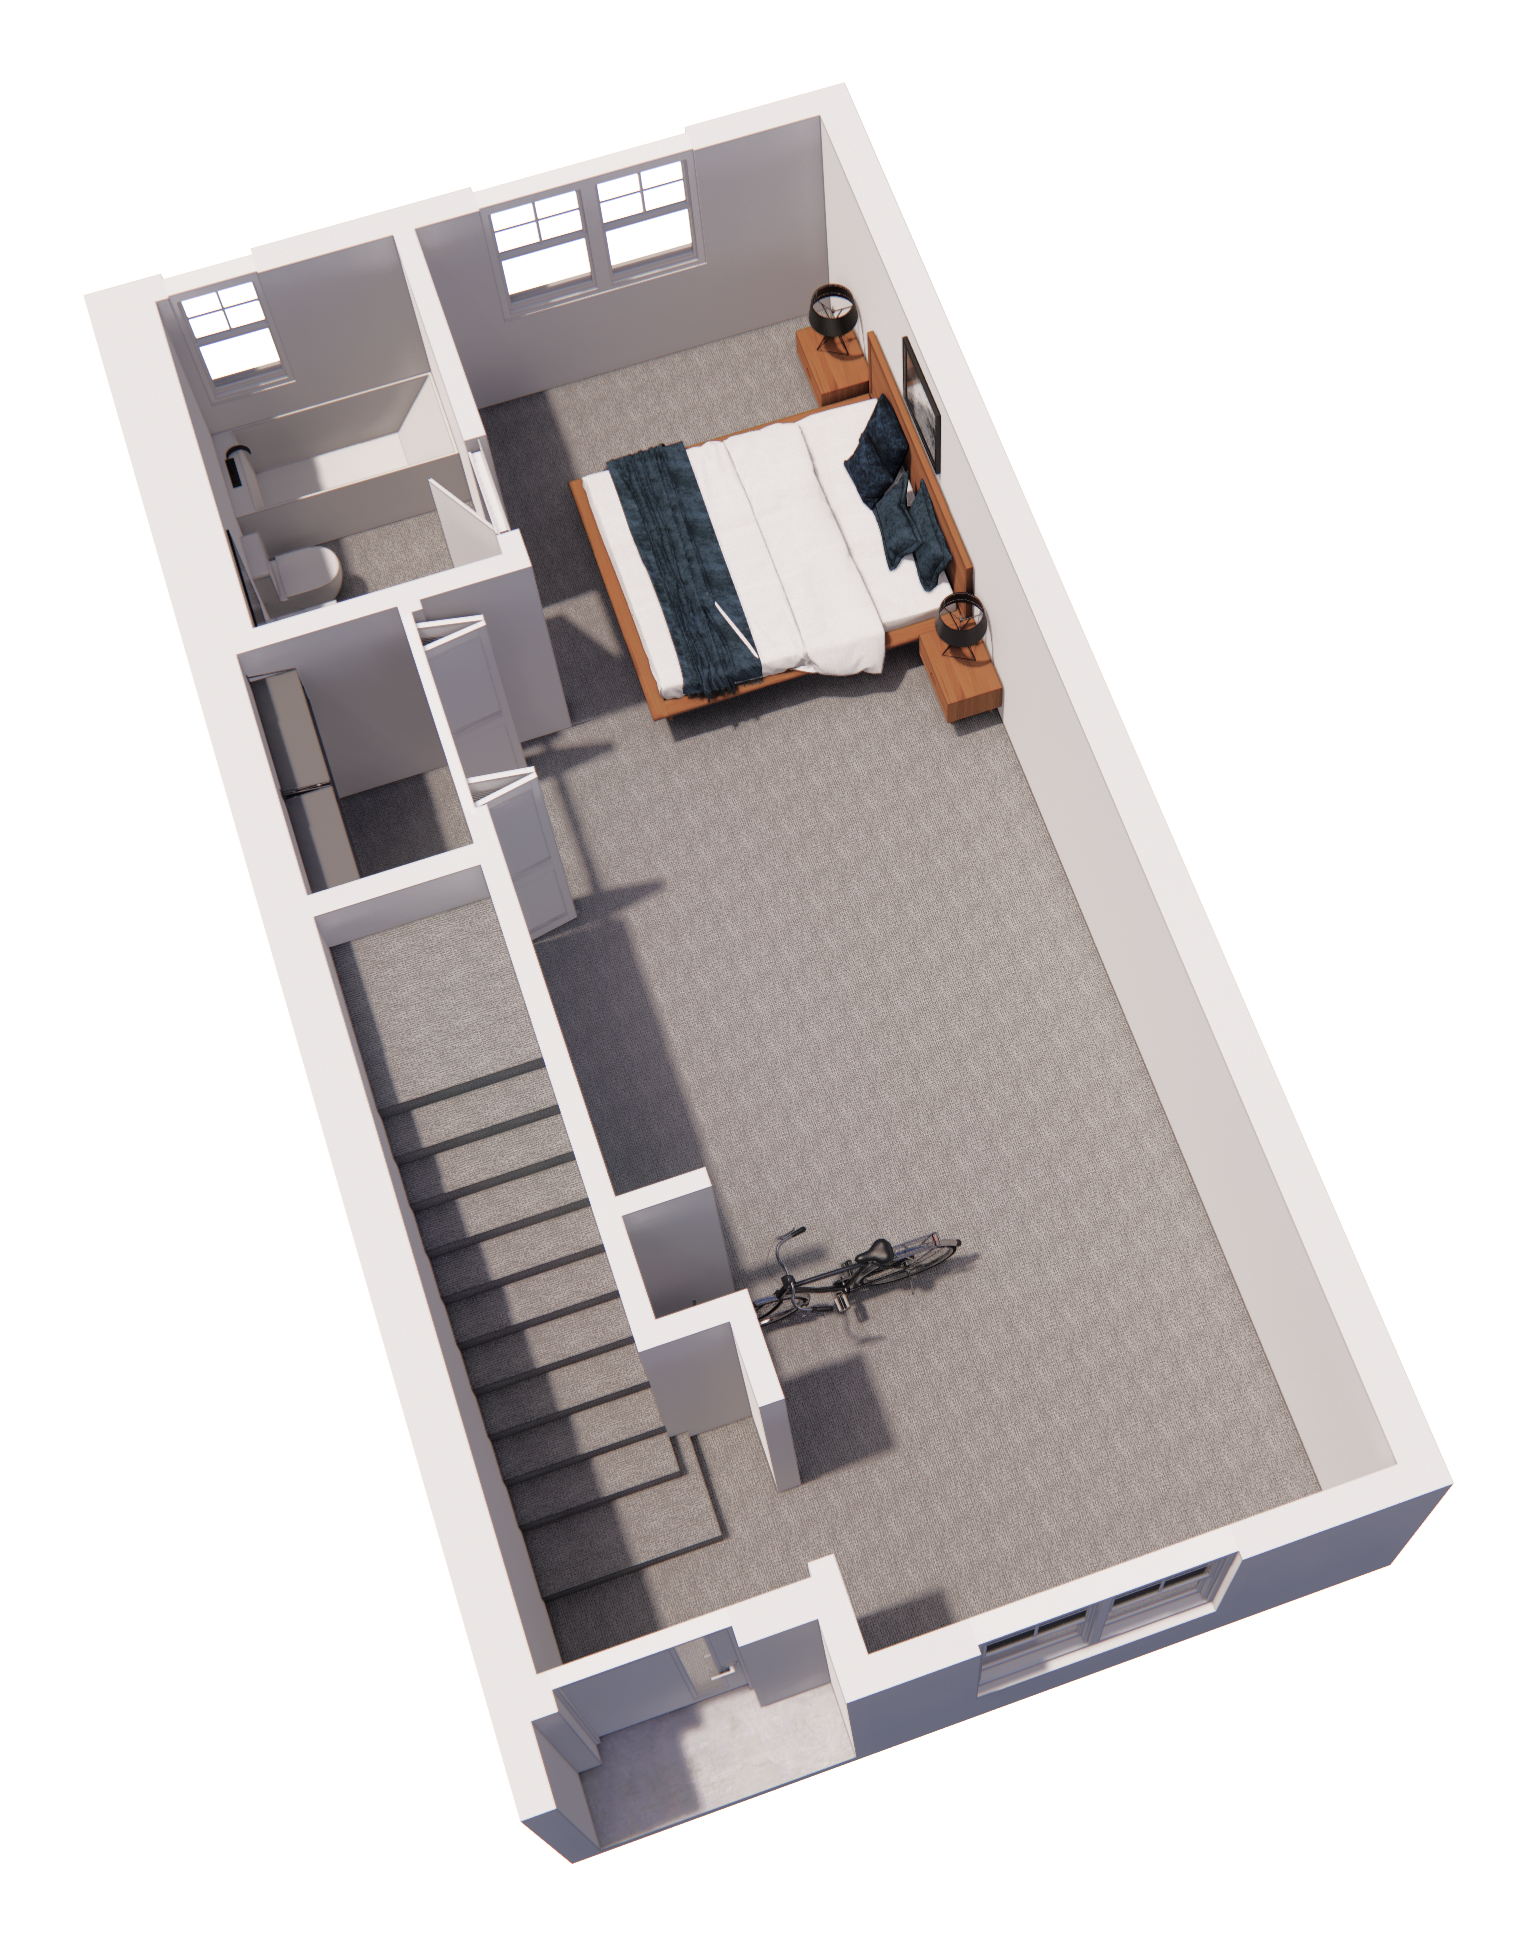 3 bed, 3.5 bath townhome floor plan - 1st floor